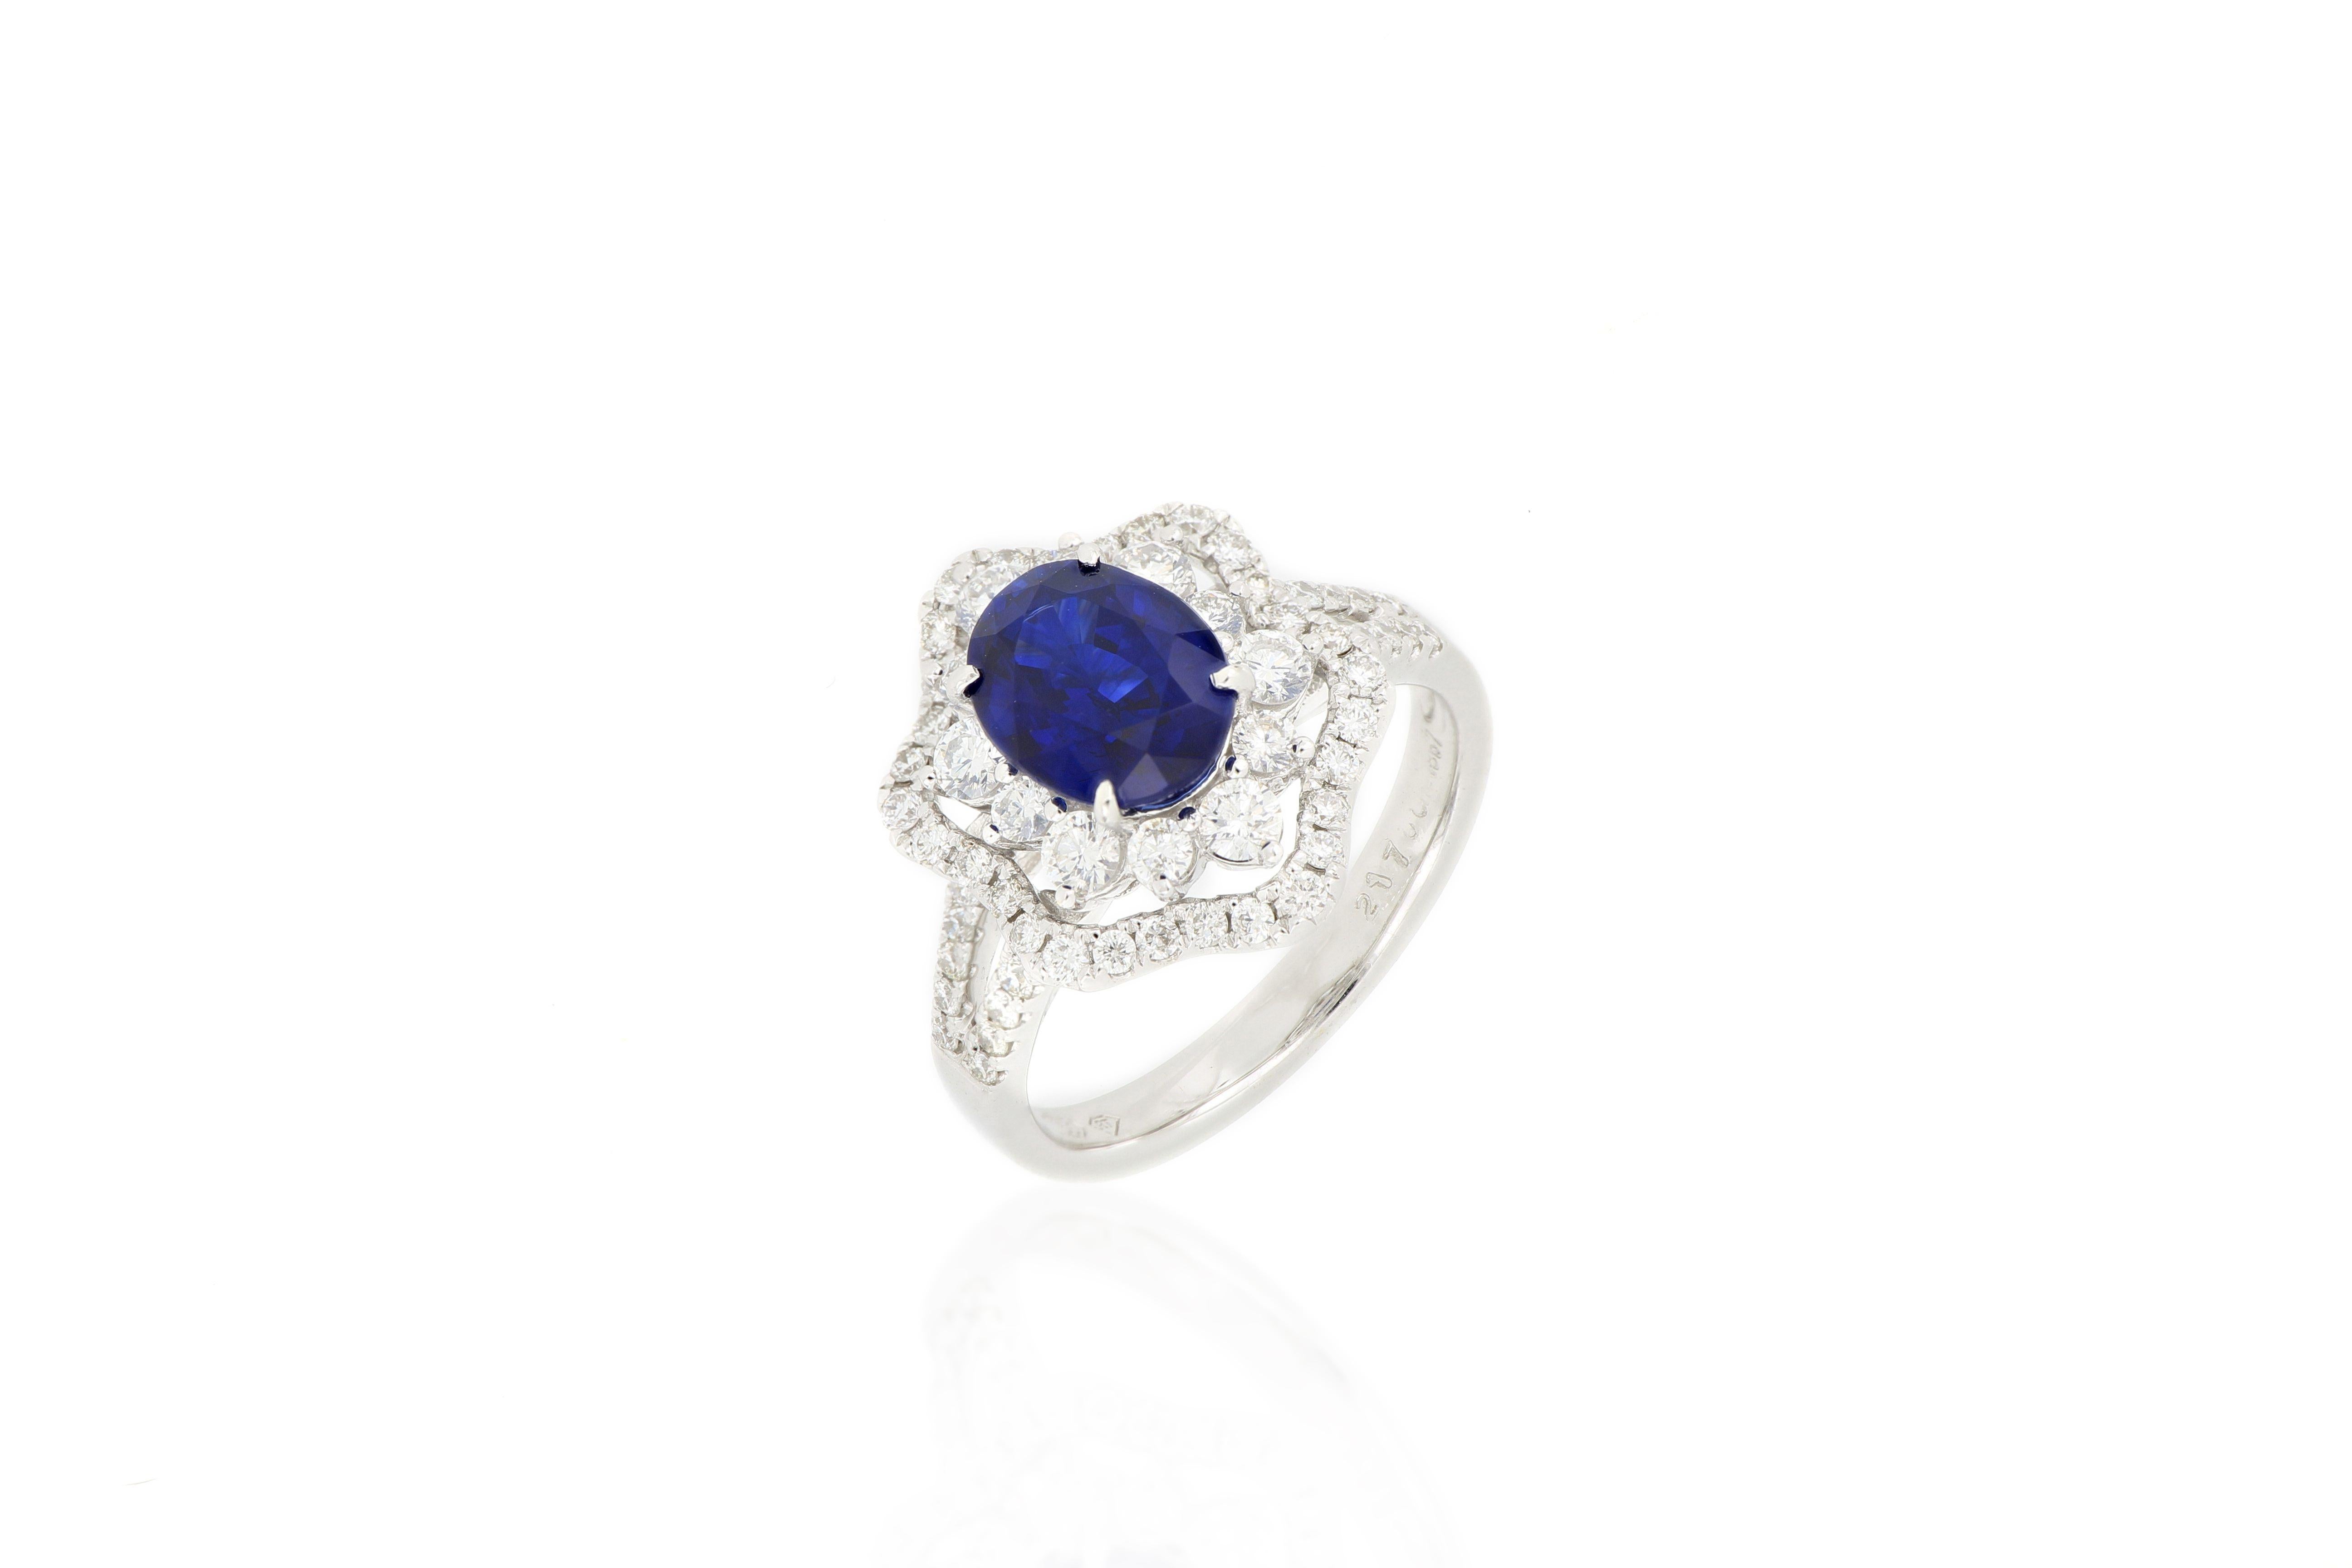 Ein atemberaubender und glamouröser Ring, besetzt mit einem ovalen, lebhaften, königsblauen Saphir mit einem Gewicht von 2,17cts, verziert mit Diamanten im Brillantschliff, die sich bis zu den Schultern erstrecken und insgesamt 1,00cts ausmachen,